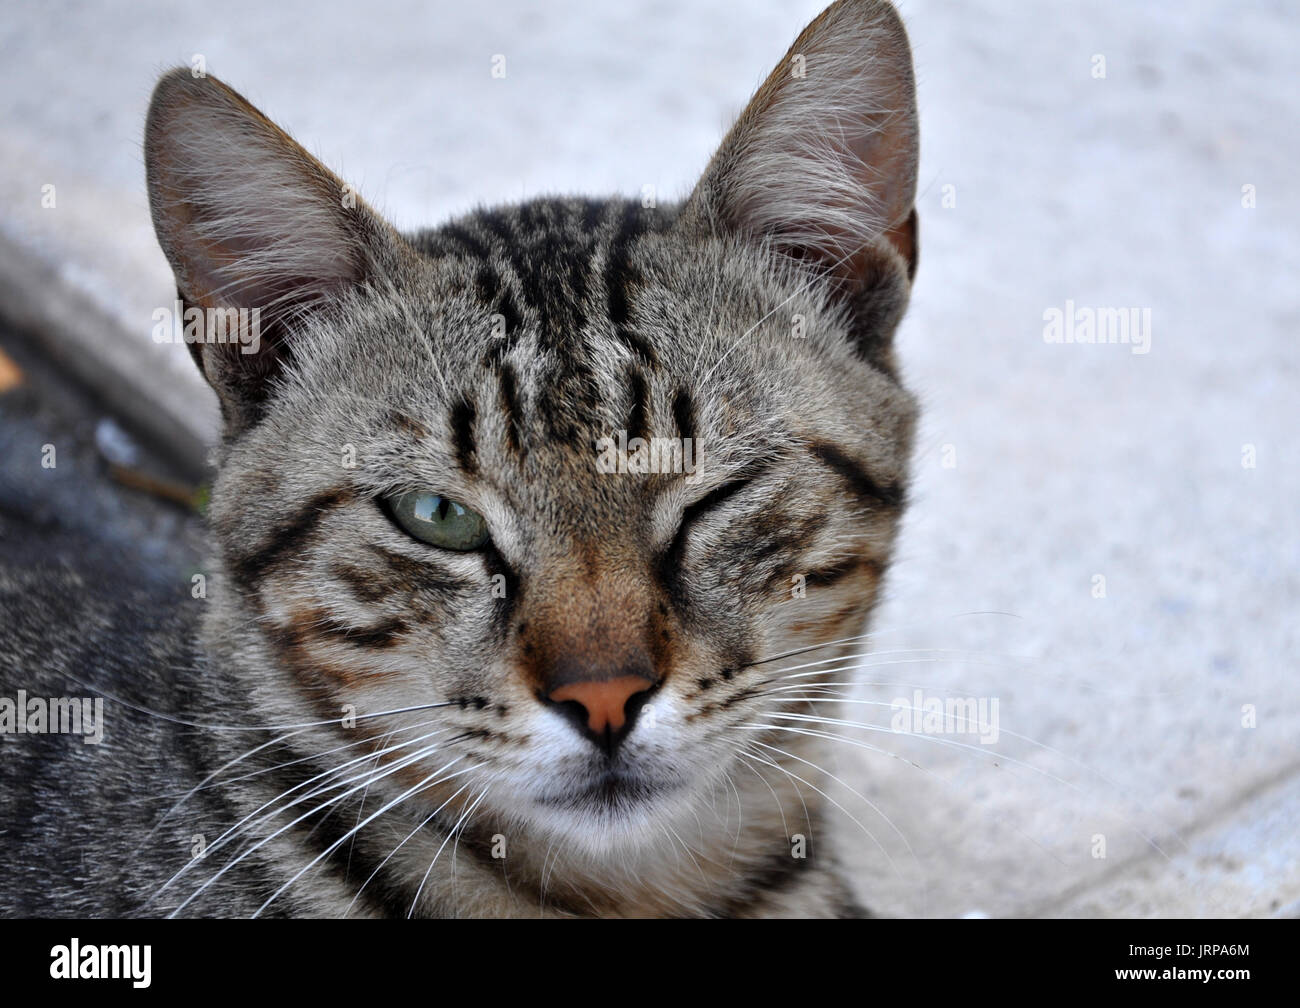 Eine Katze, die ein Auge schließt augenblicklich Stockfotografie - Alamy